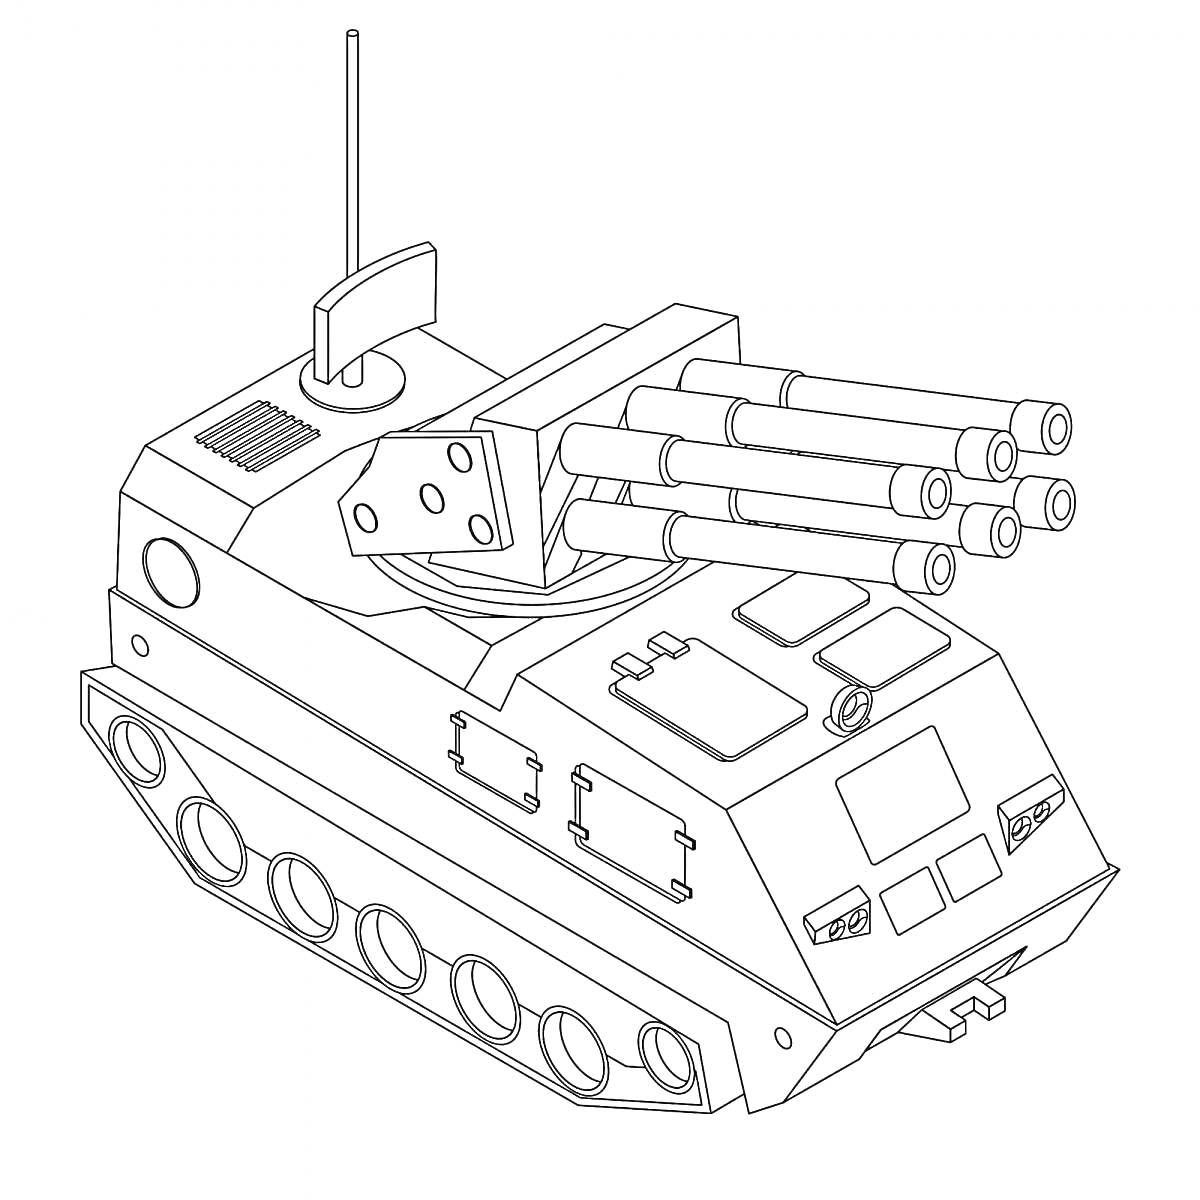 Раскраска Танковая установка с шестью орудиями, радиоантенной, люками и гусеницами